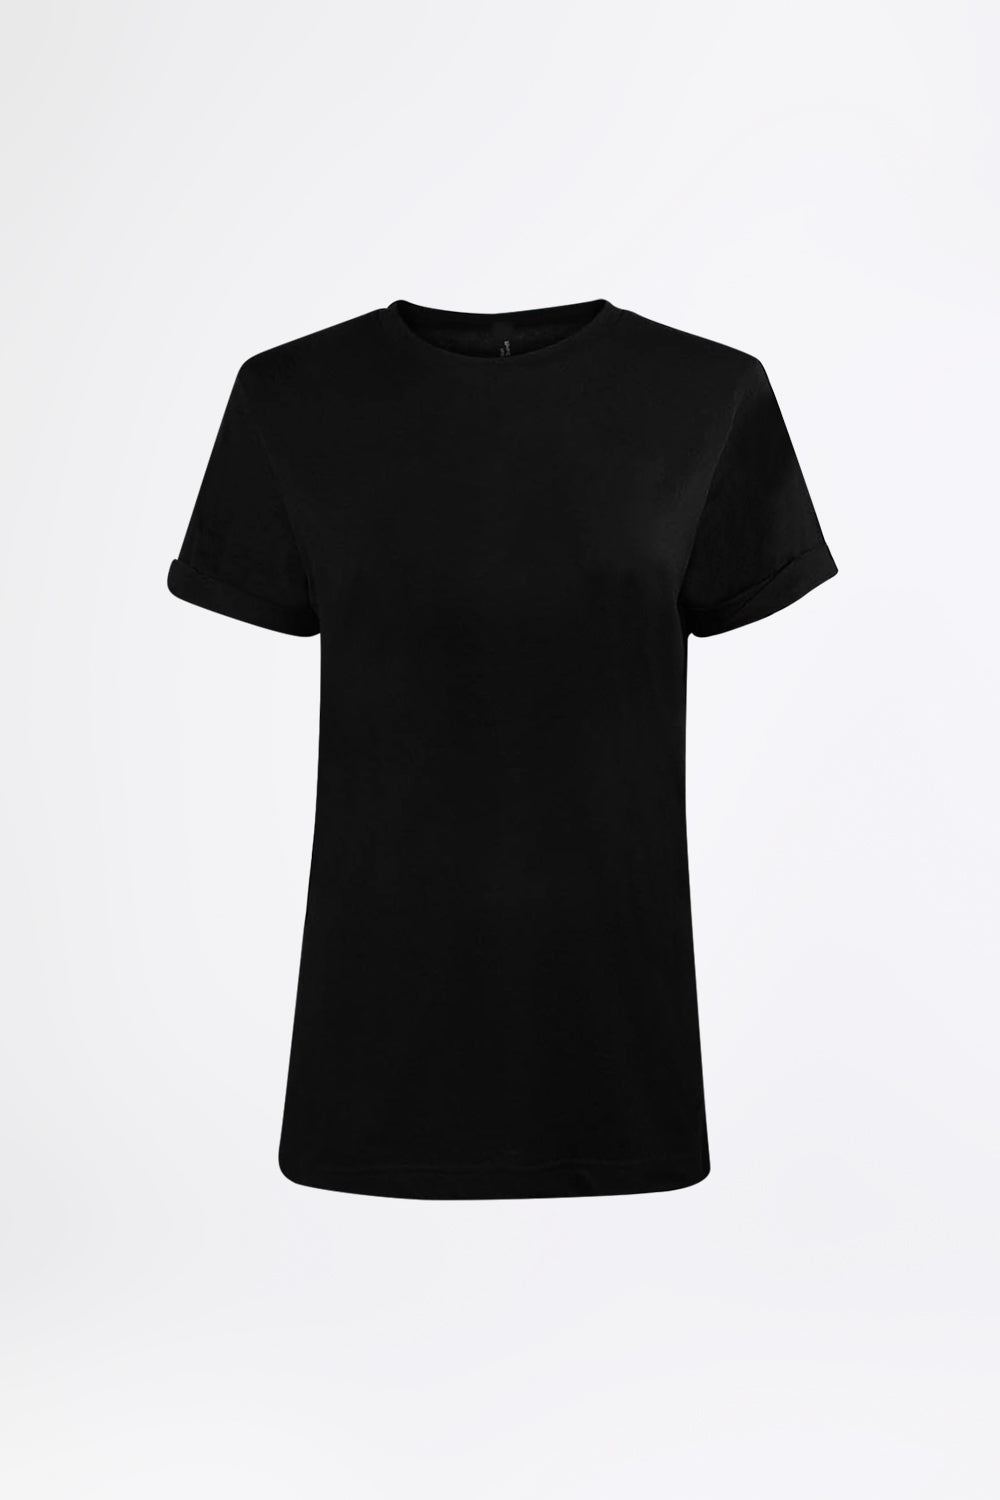 BASIC BLACK - T-Shirt